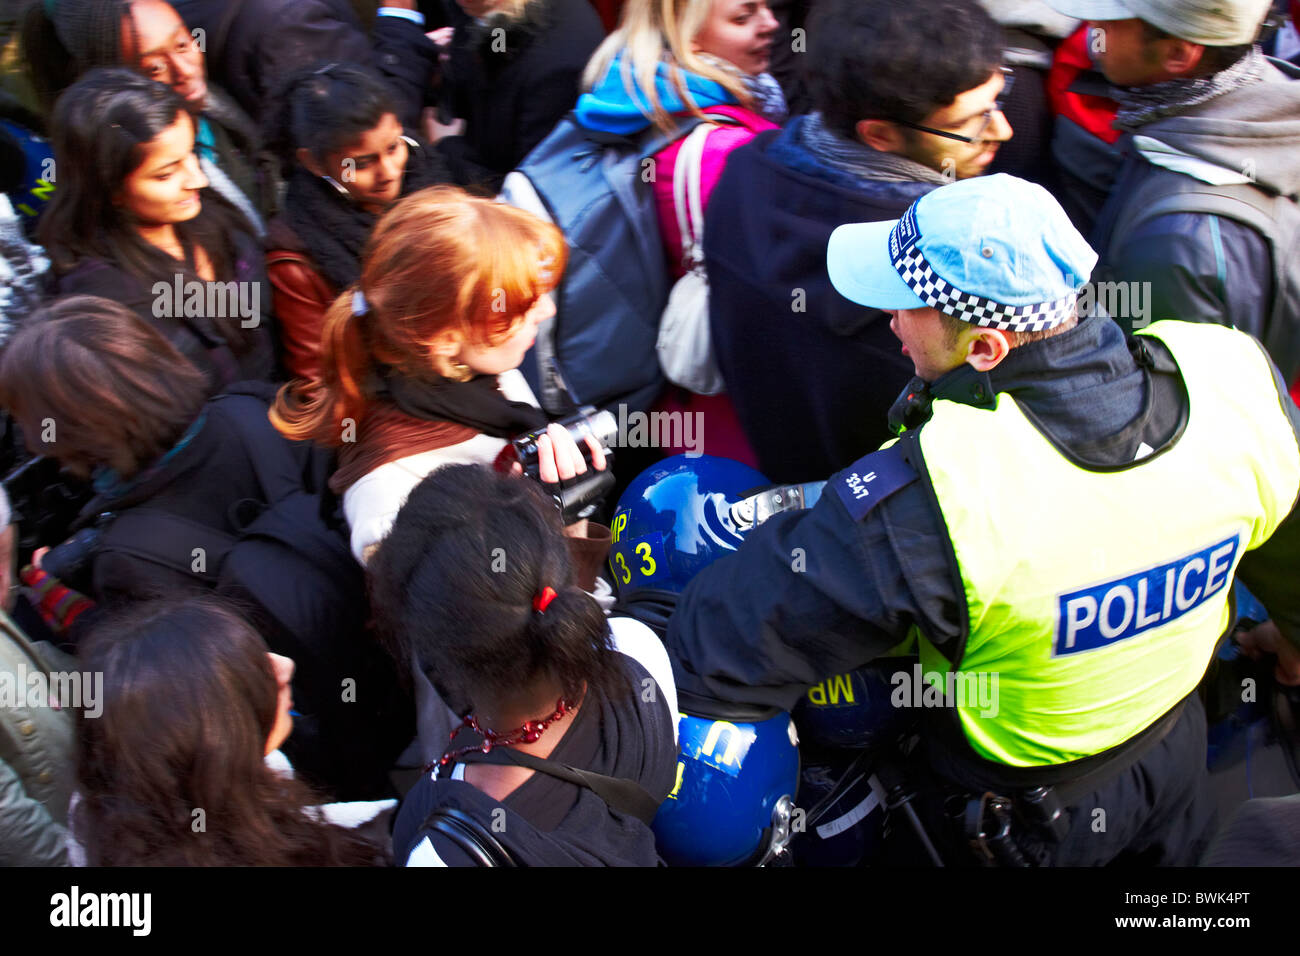 Londra, Regno Unito. Un funzionario di polizia lo spinge attraverso la folla per fornire elmetti antisommossa ai colleghi nel corso di una protesta studentesca contro pianificare Foto Stock